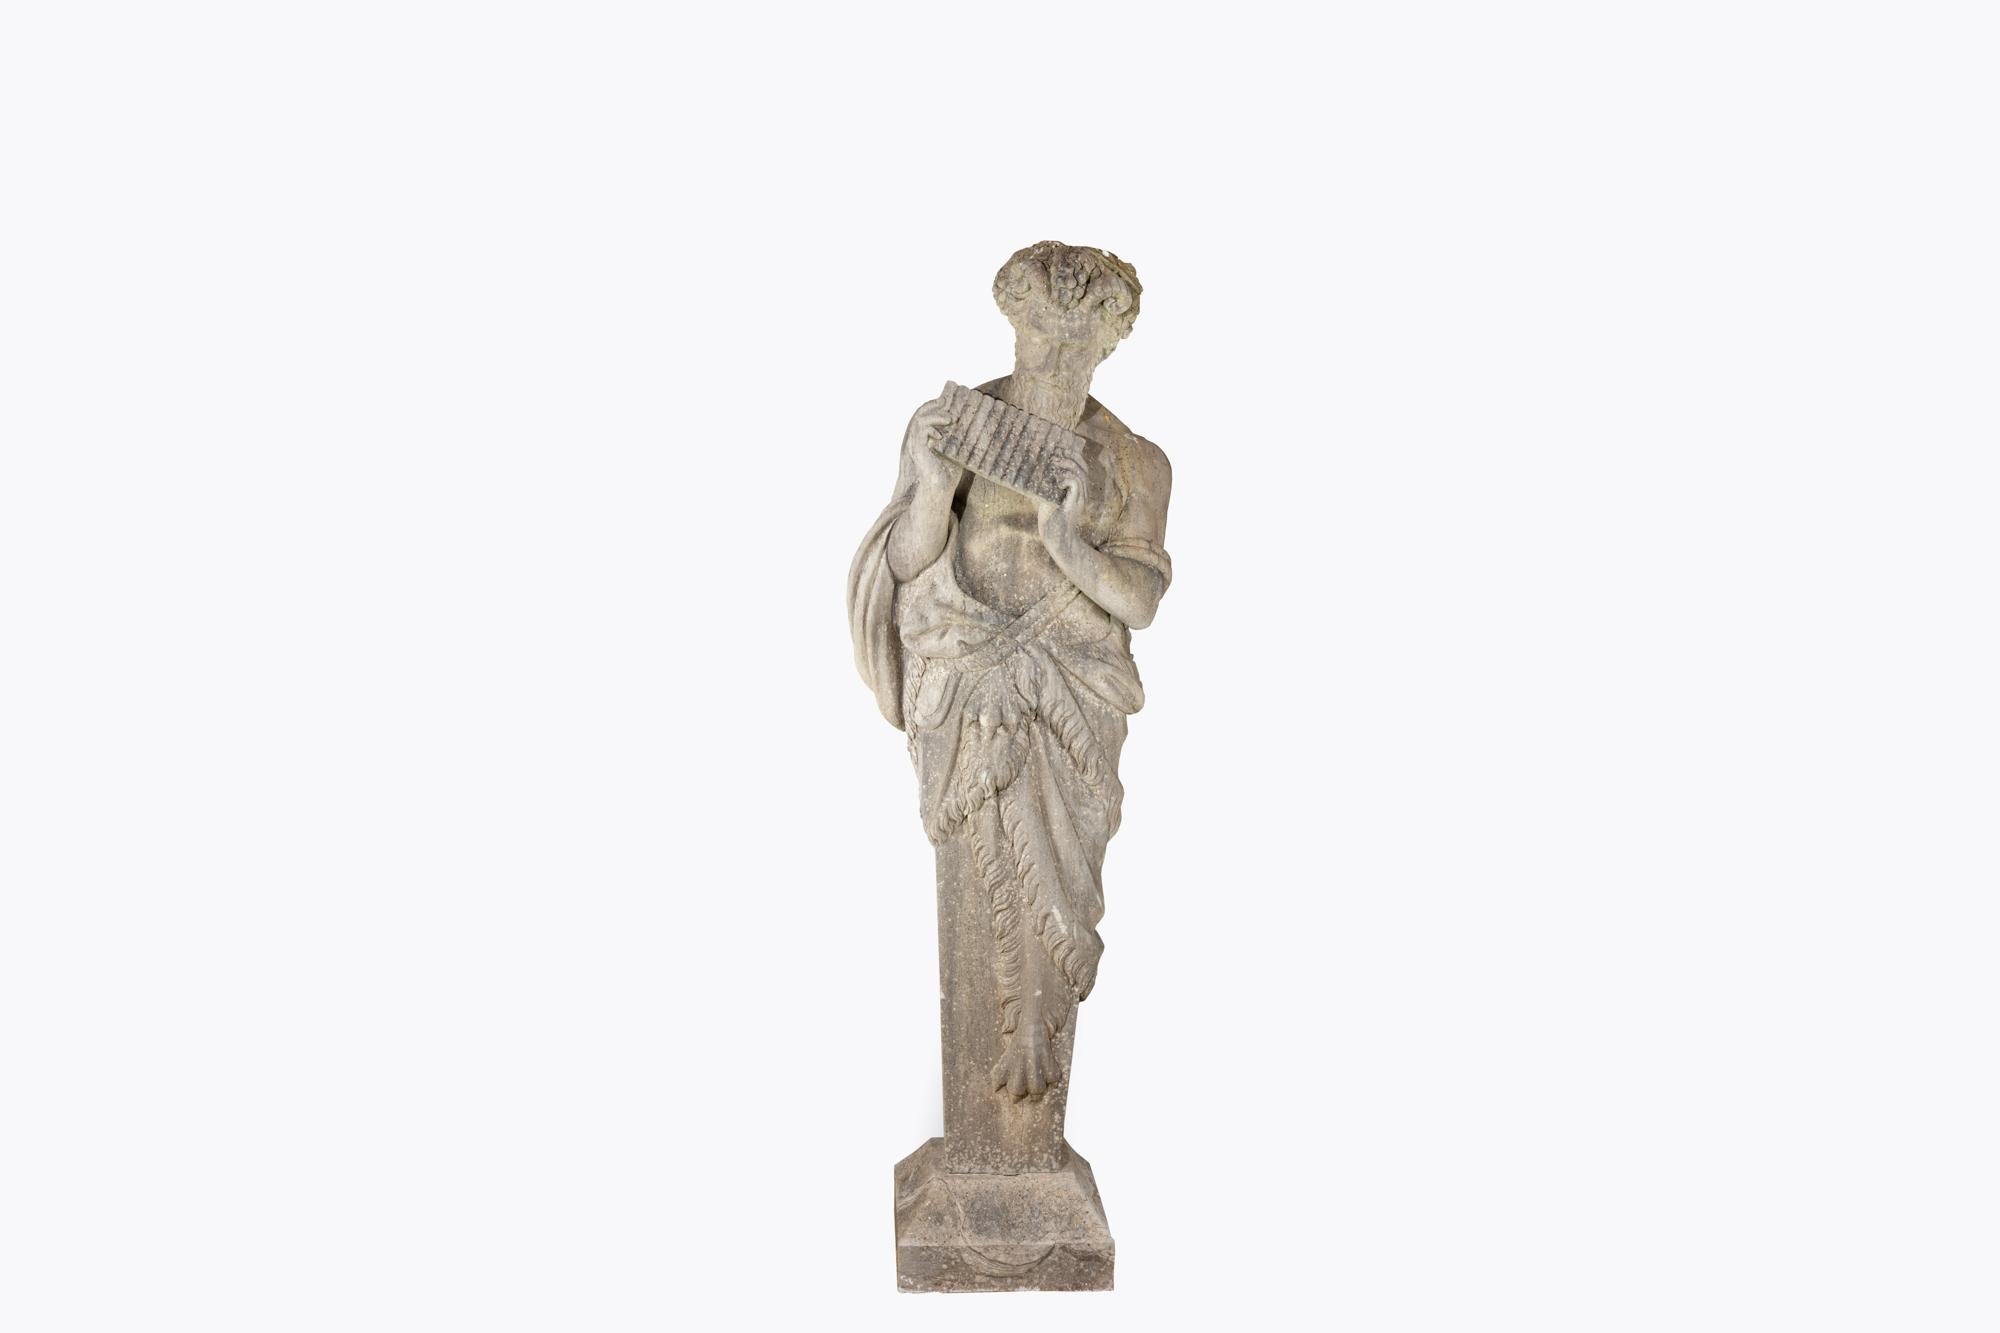 Georgien Sculpture de 6 pieds de haut en pierre calcaire sculptée du 18ème siècle représentant la panthère mythologique en vente